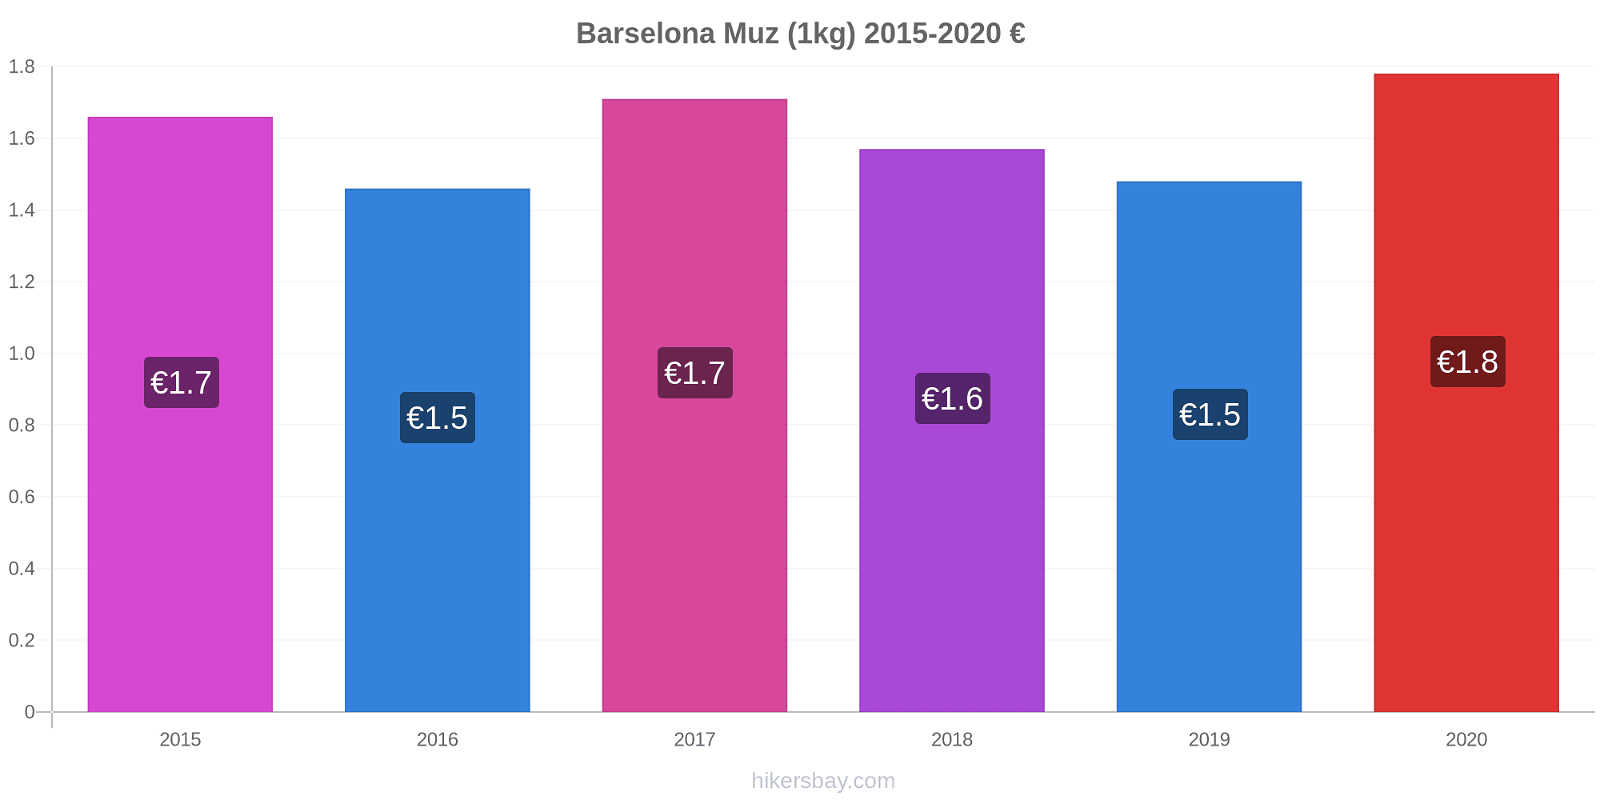 Barselona fiyat değişiklikleri Muz (1kg) hikersbay.com